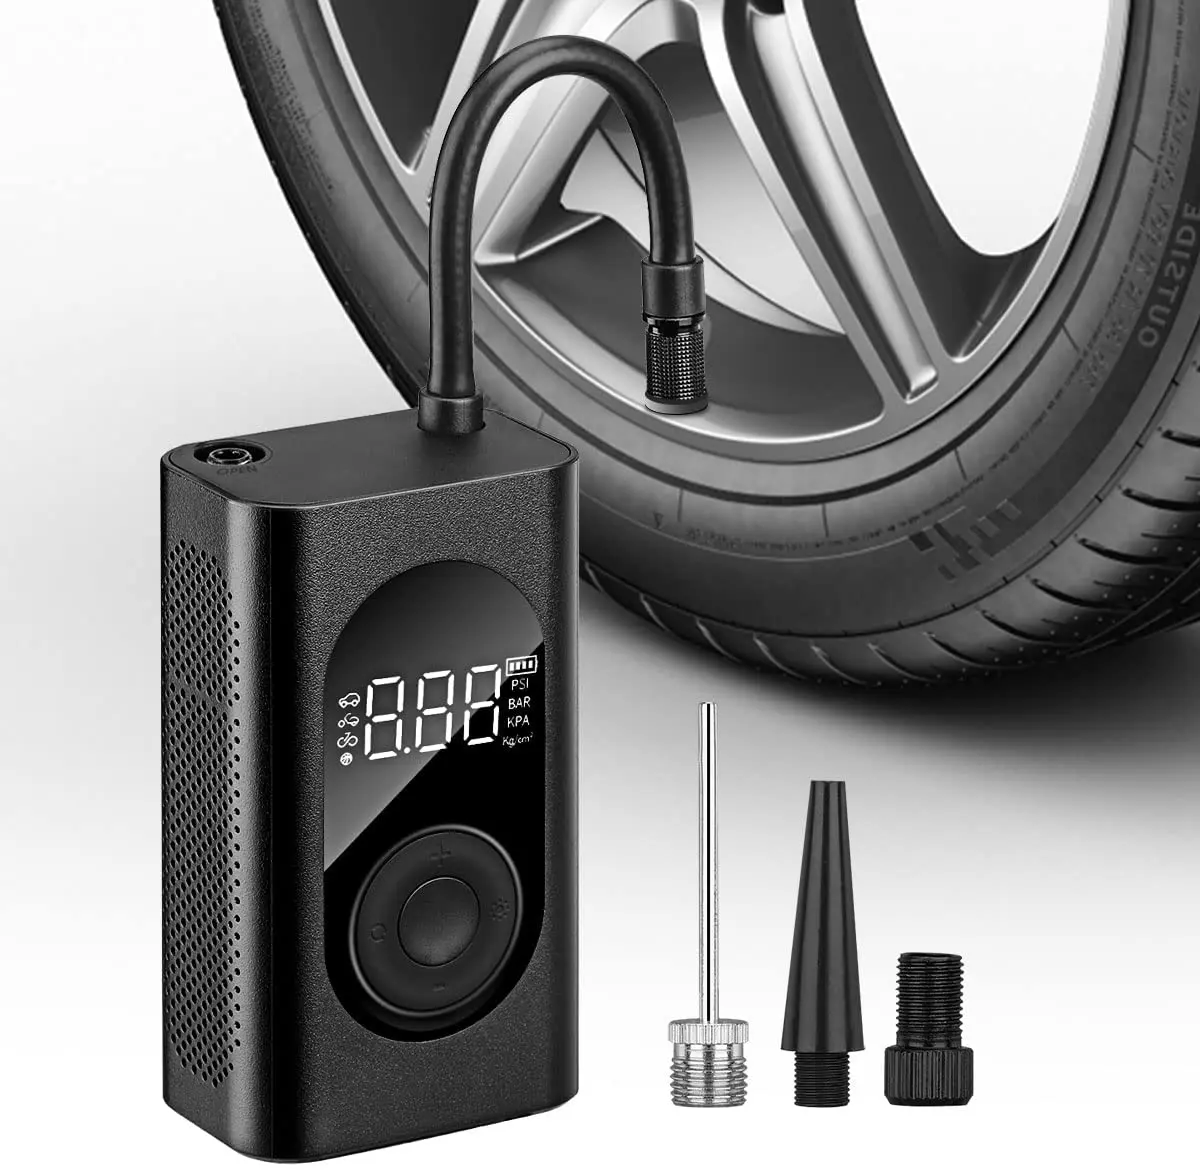 ポータブル緊急ツールミニエアコンプレッサー電気自動車バイクボールエアポンプ150 PSIデジタルタイヤインフレーター、圧力計付き